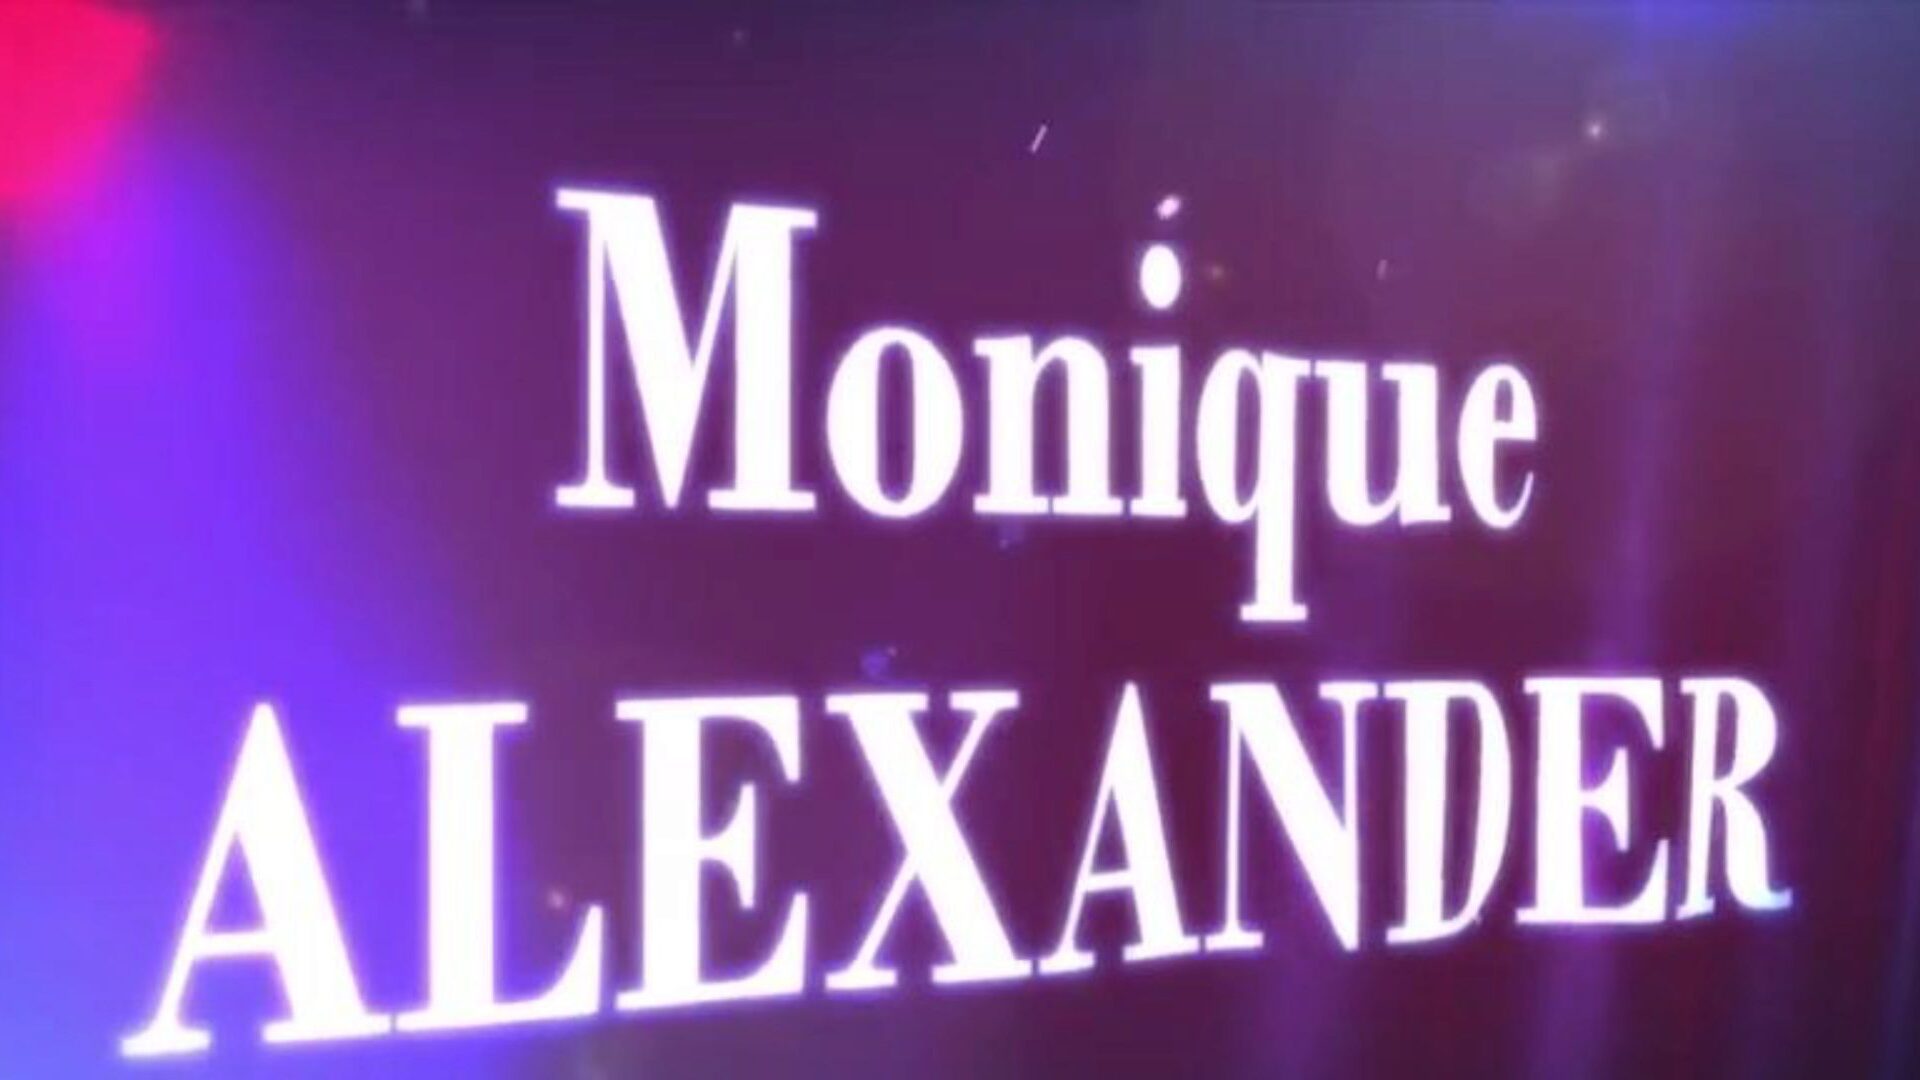 brazzers - todellisia vaimon tarinoita - mikä vie hänen niin pitkän sarjansa pääosissa monique alexander ja xander